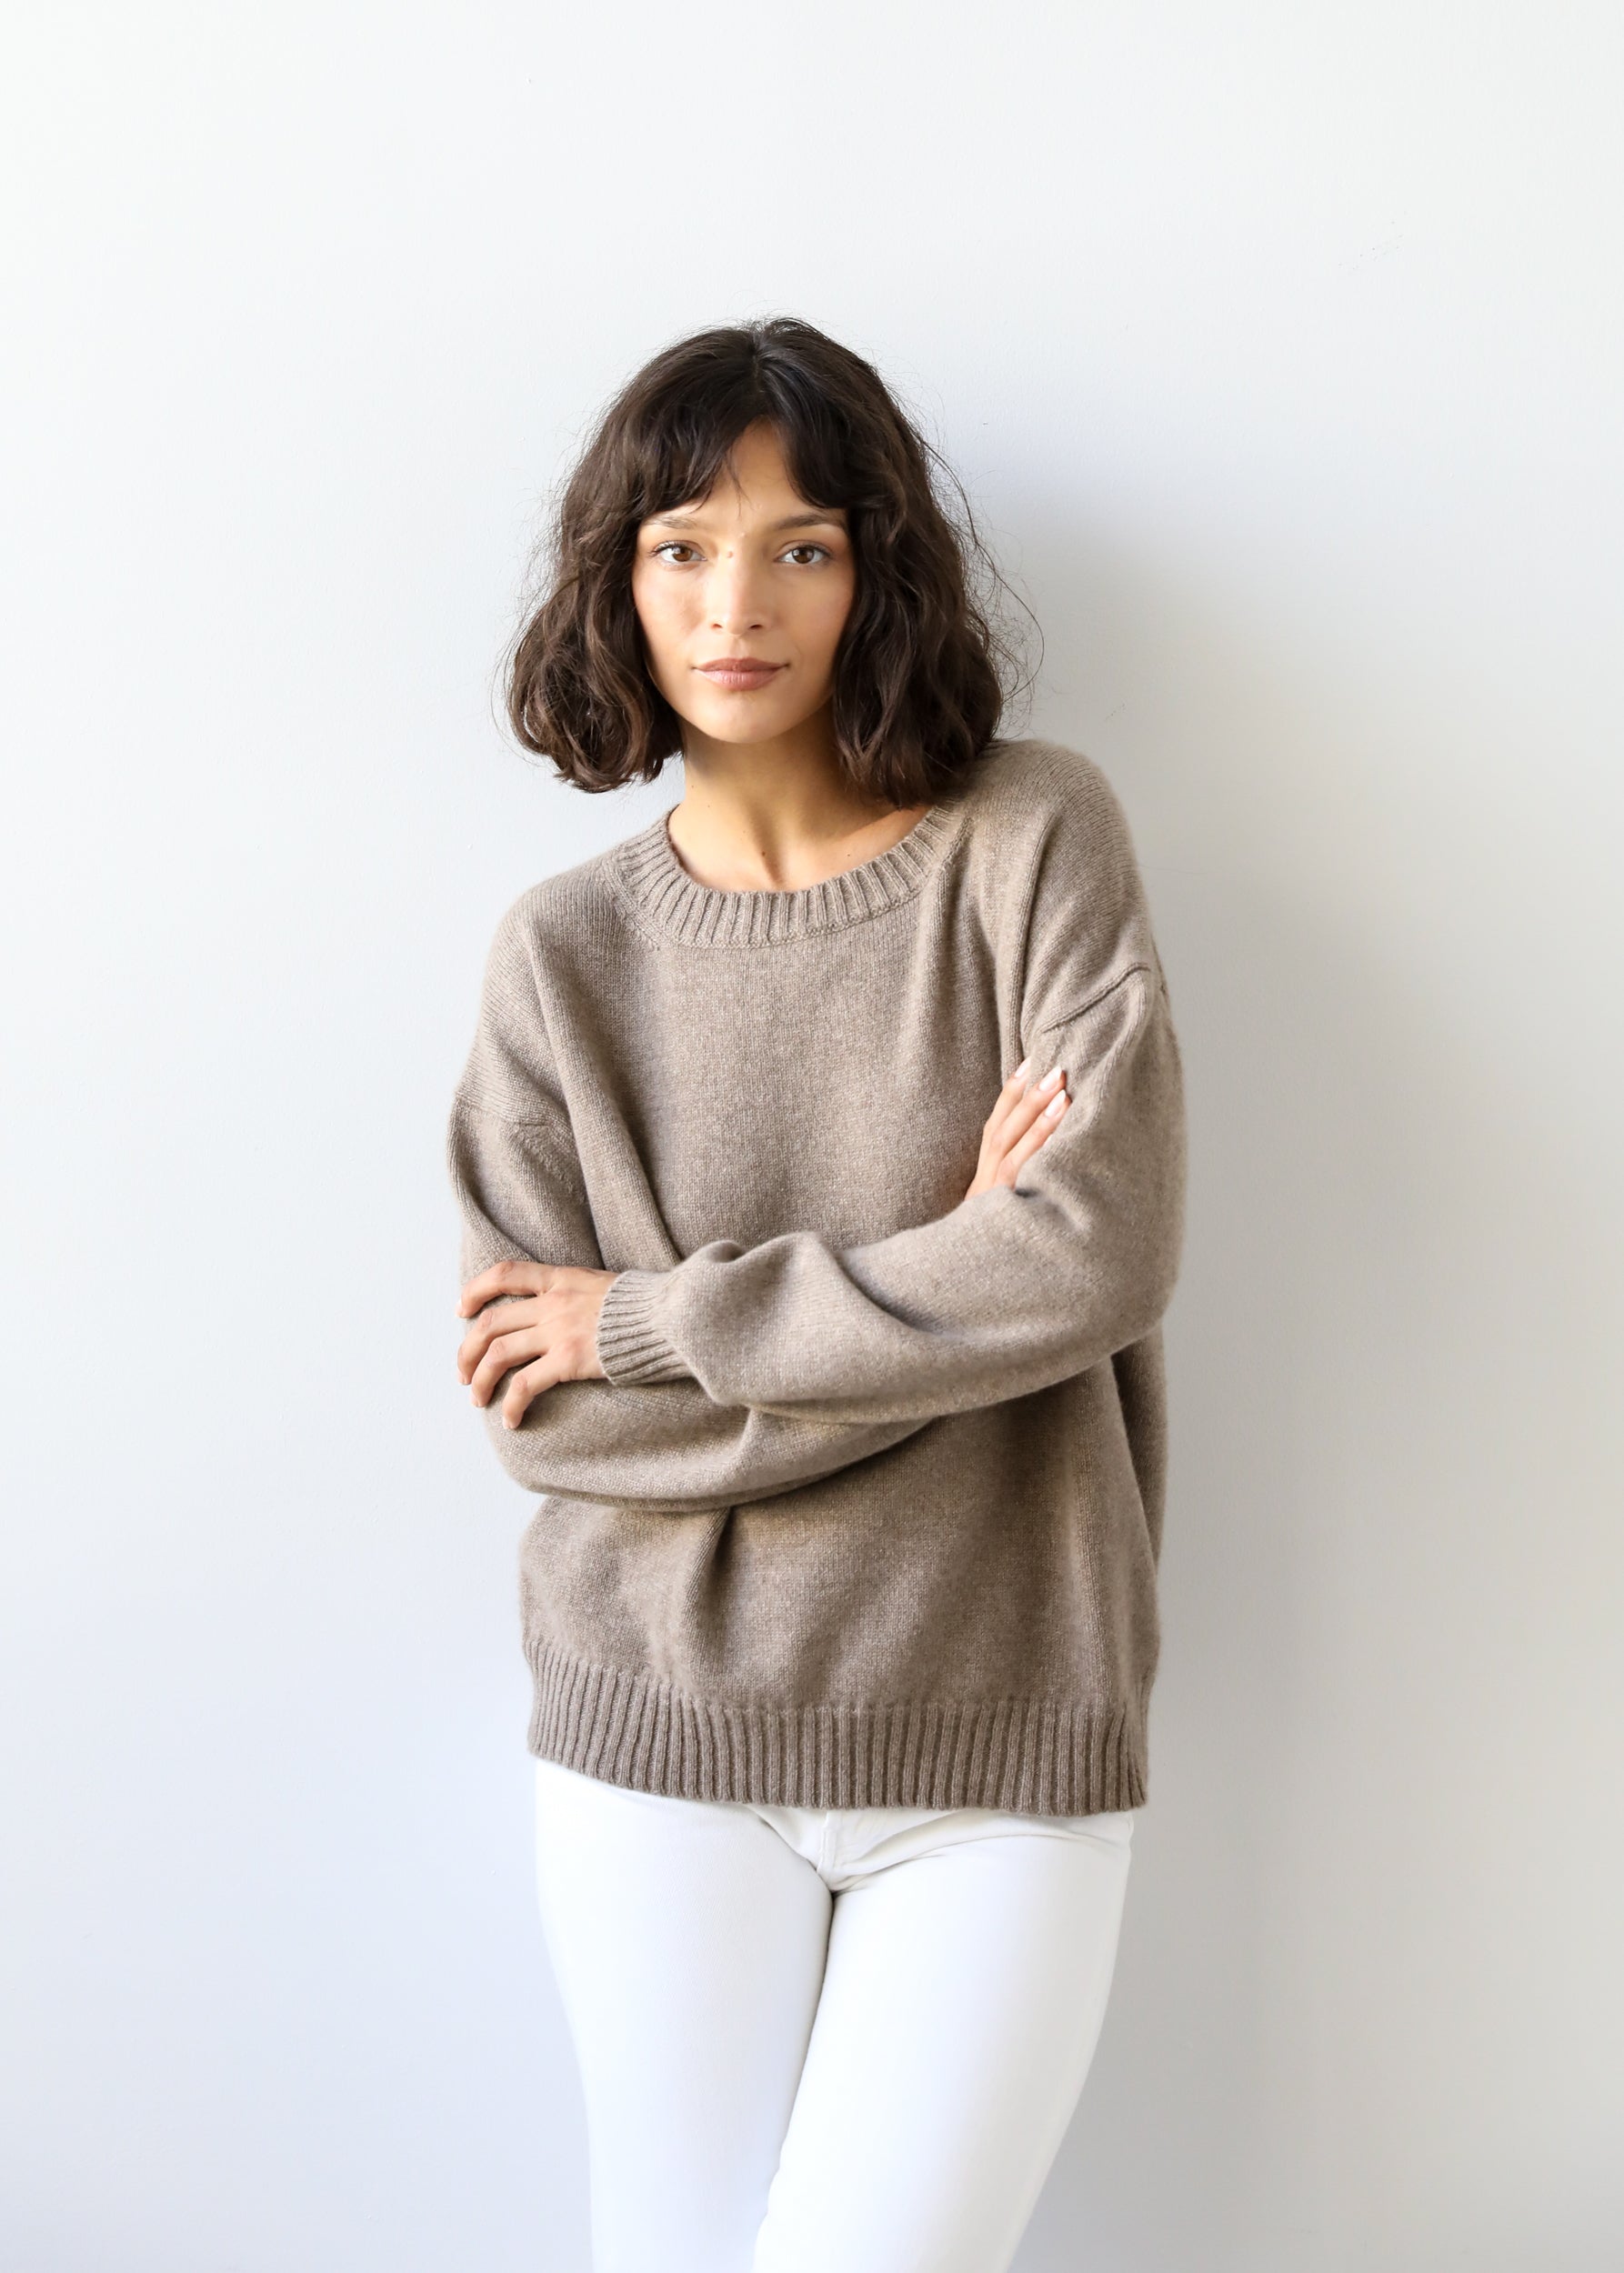 Estella NYC Fiorella Sweater in Brown Sugar Cashmere